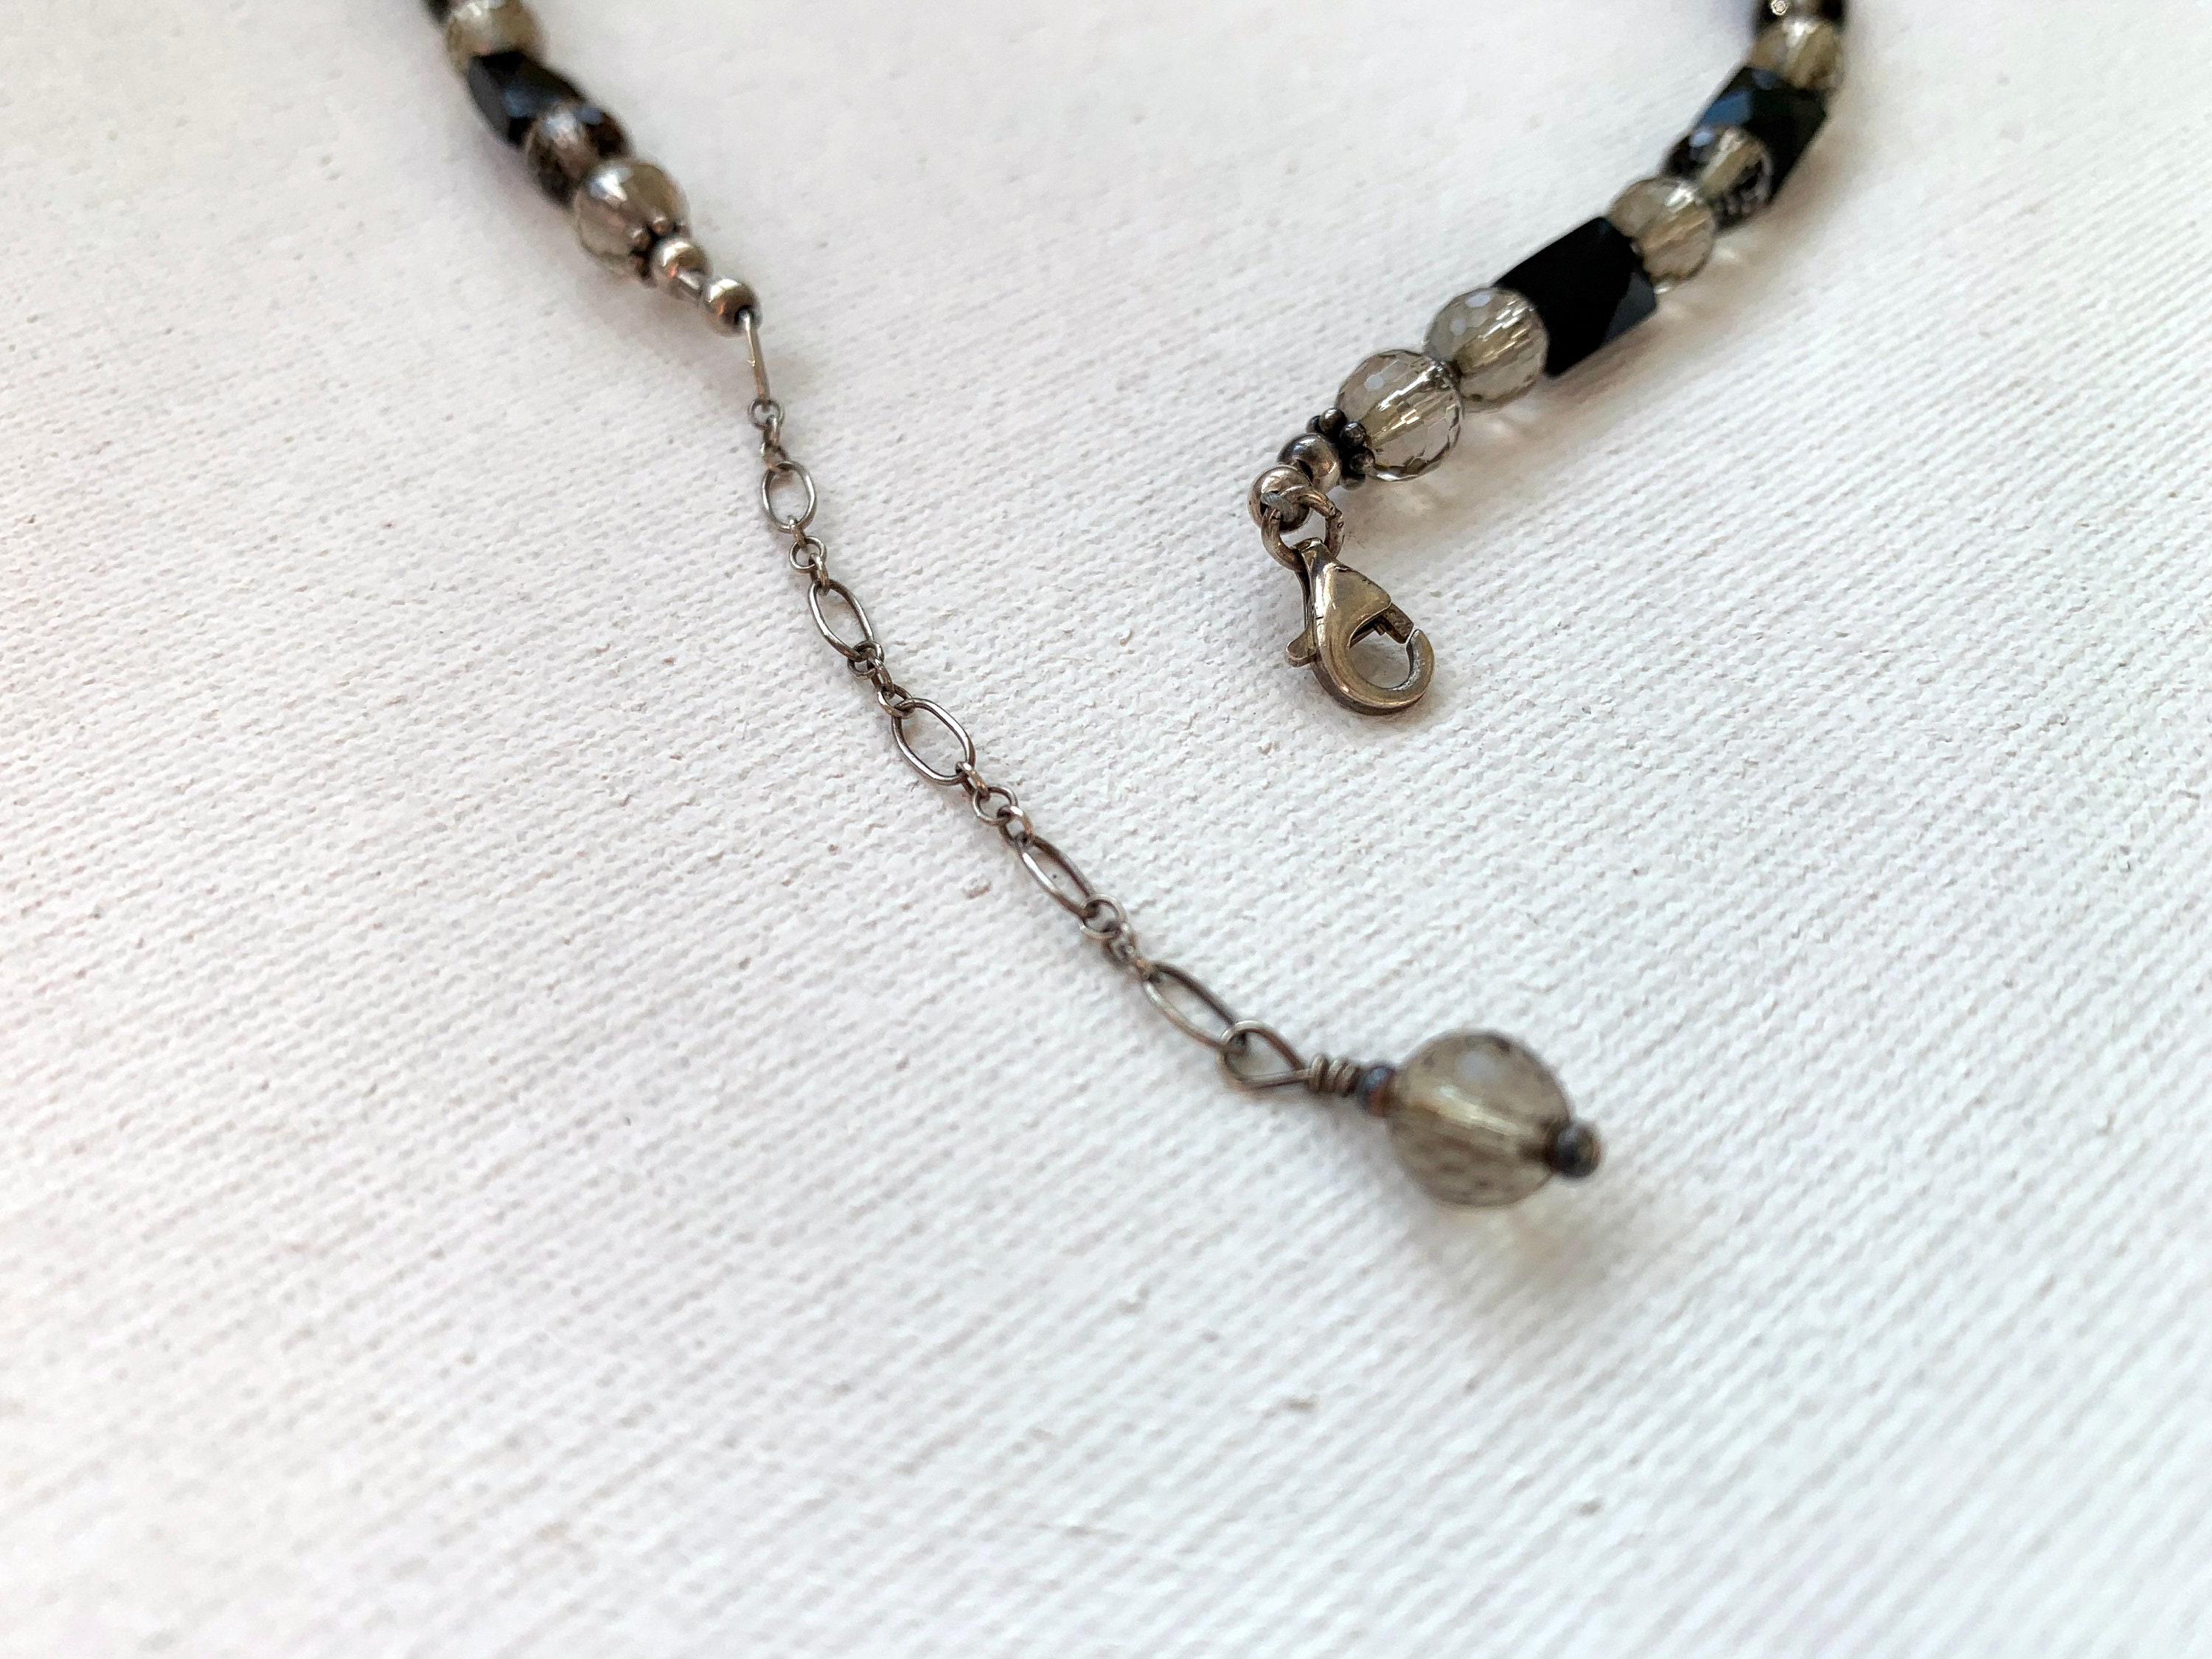 Swarovski Crystal and black onyx formal necklace | Etsy